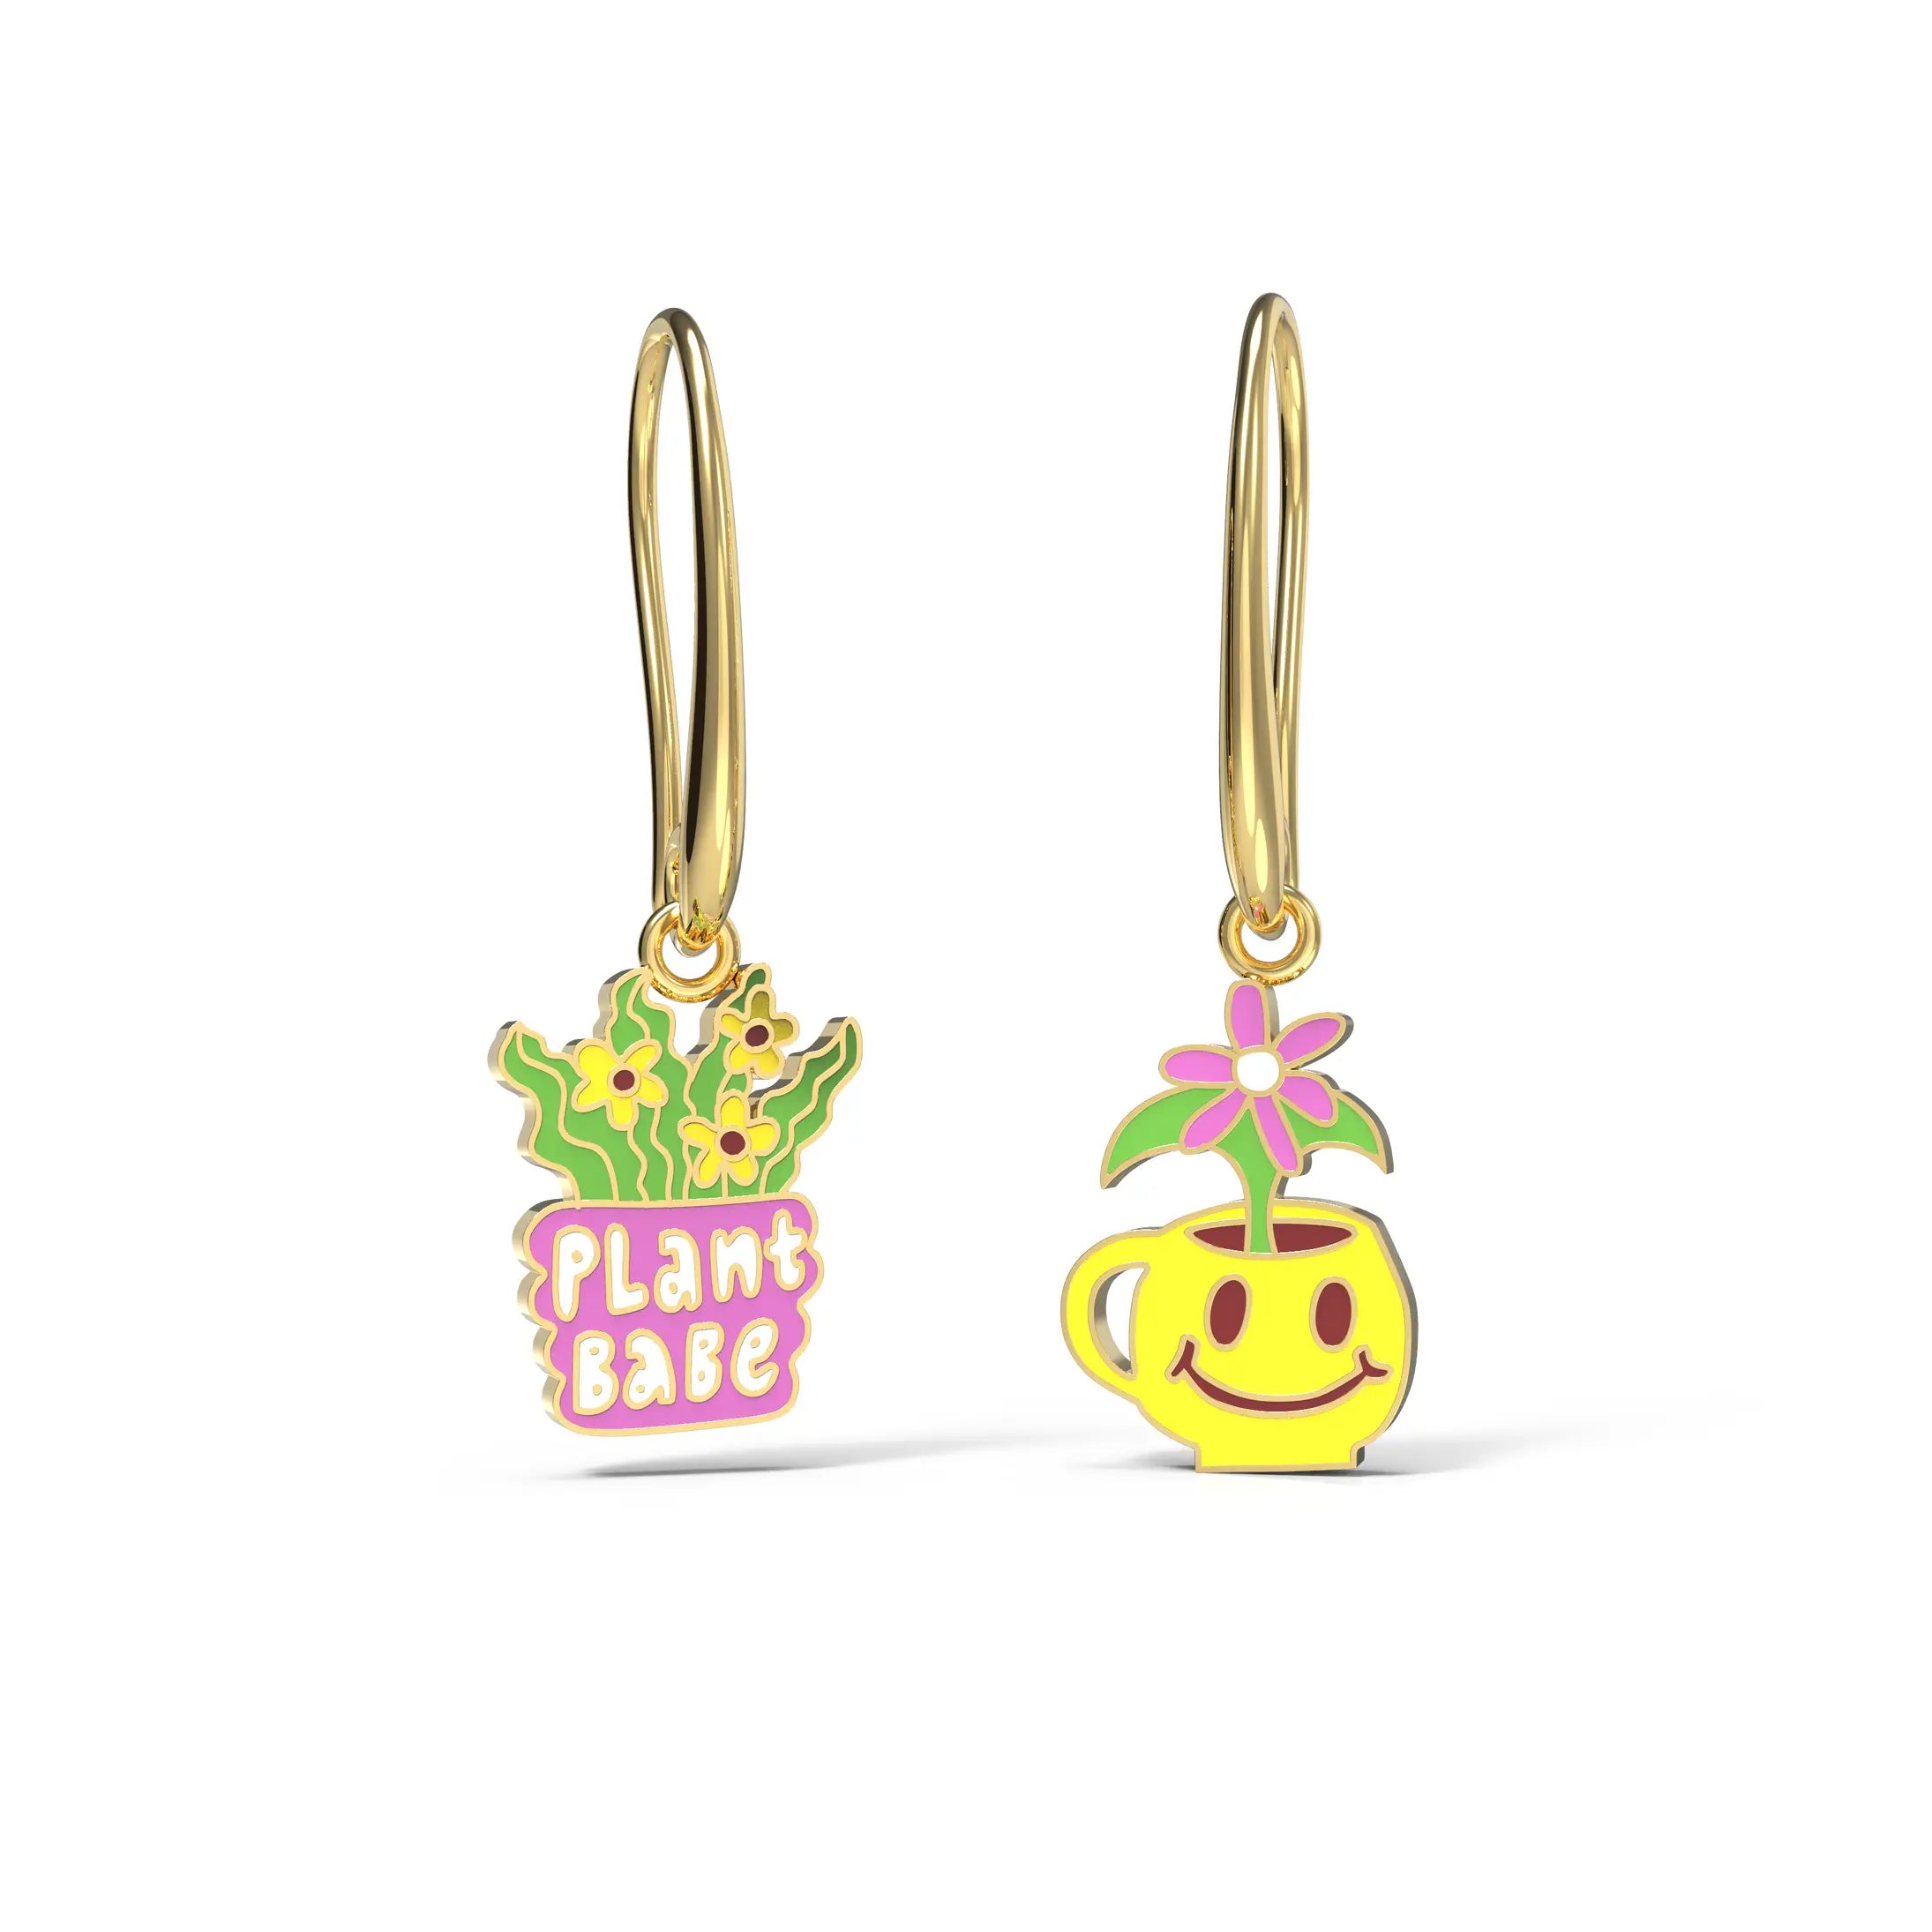 Plant Babe Hanging Earrings - 18k Gold Gilt Enamel Earrings